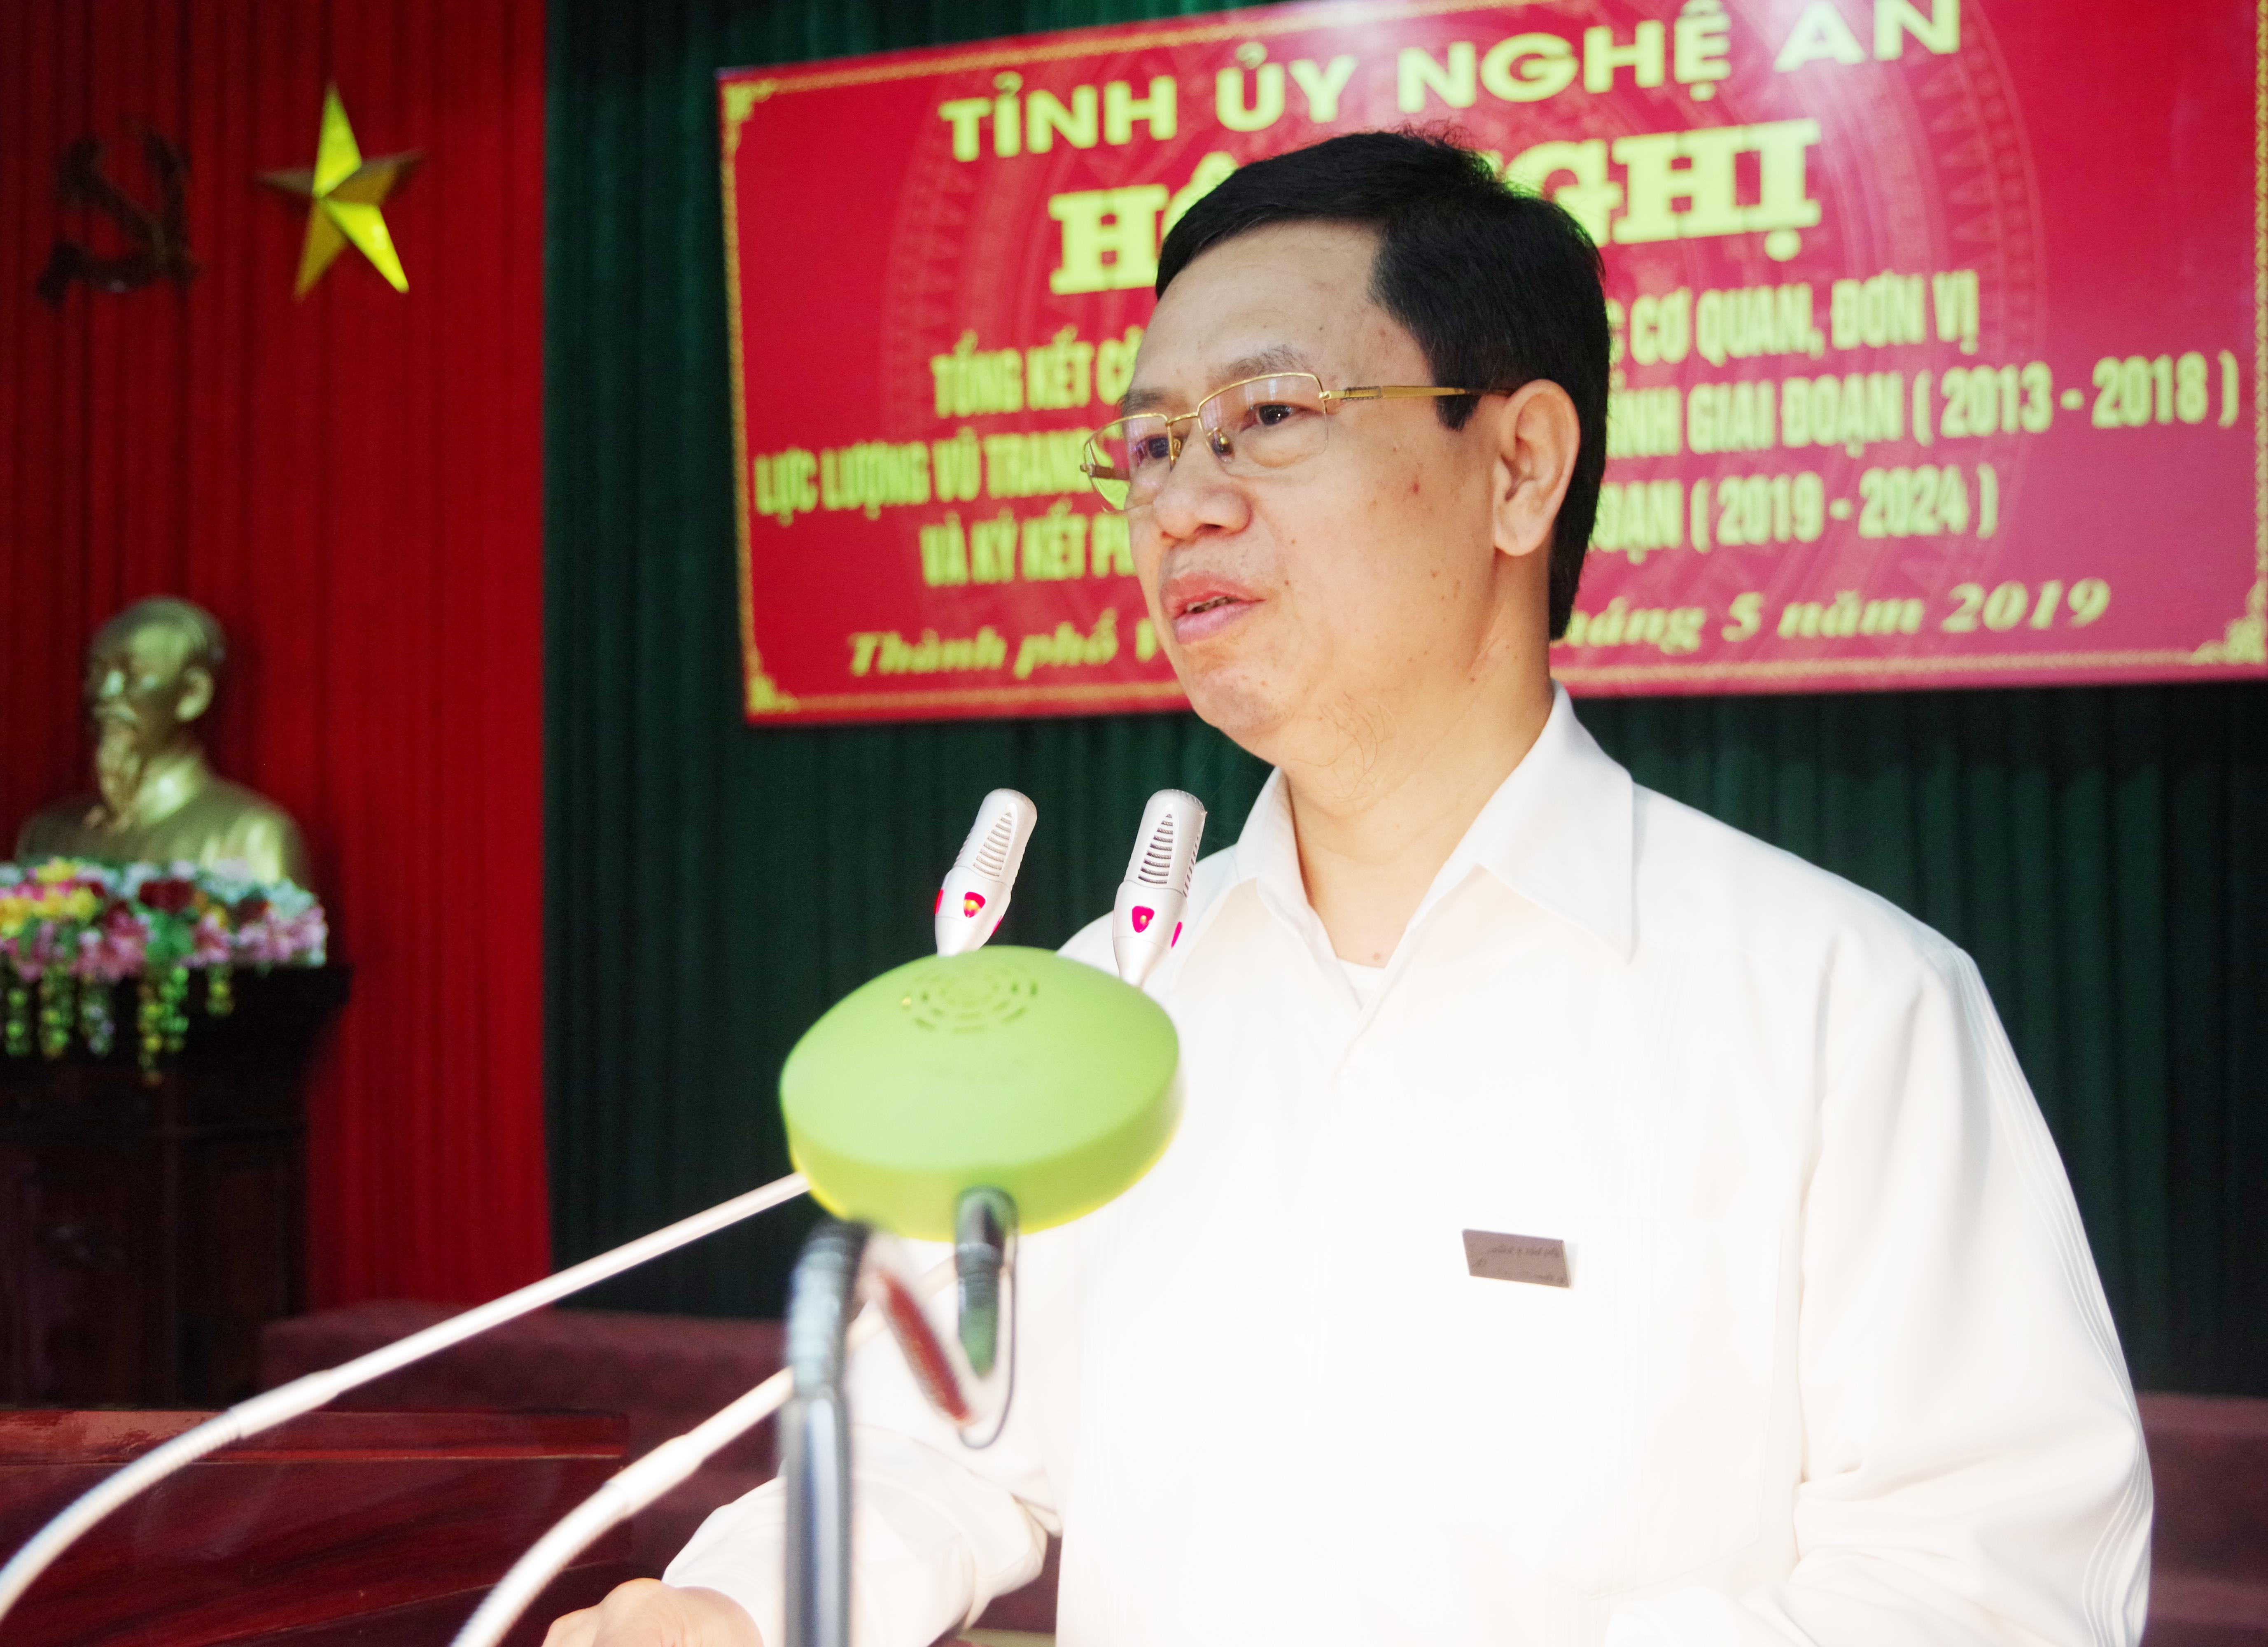 Phó Bí thư Thường trực Nguyễn Xuân Sơn phát biểu tại hội nghị. Ảnh: Thanh Lê